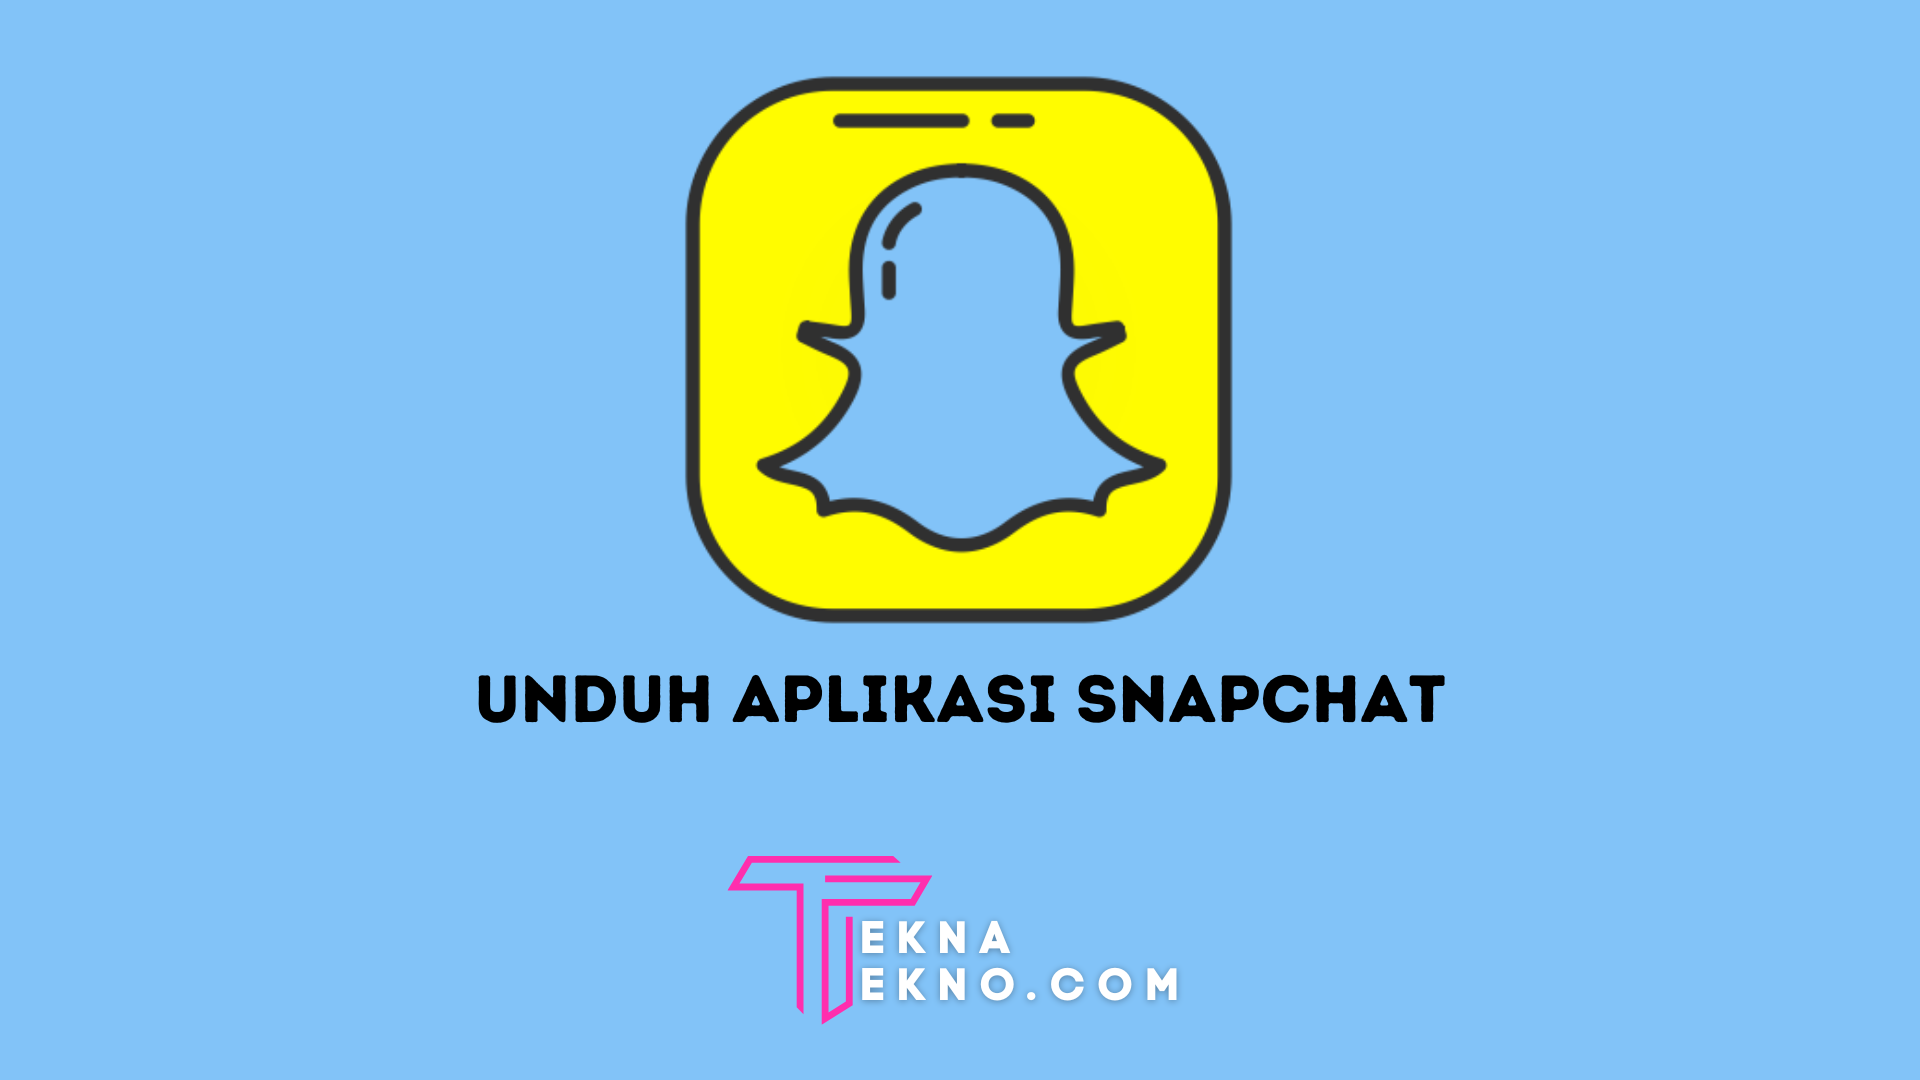 Unduh Aplikasi Snapchat Untuk Android Disini, Update